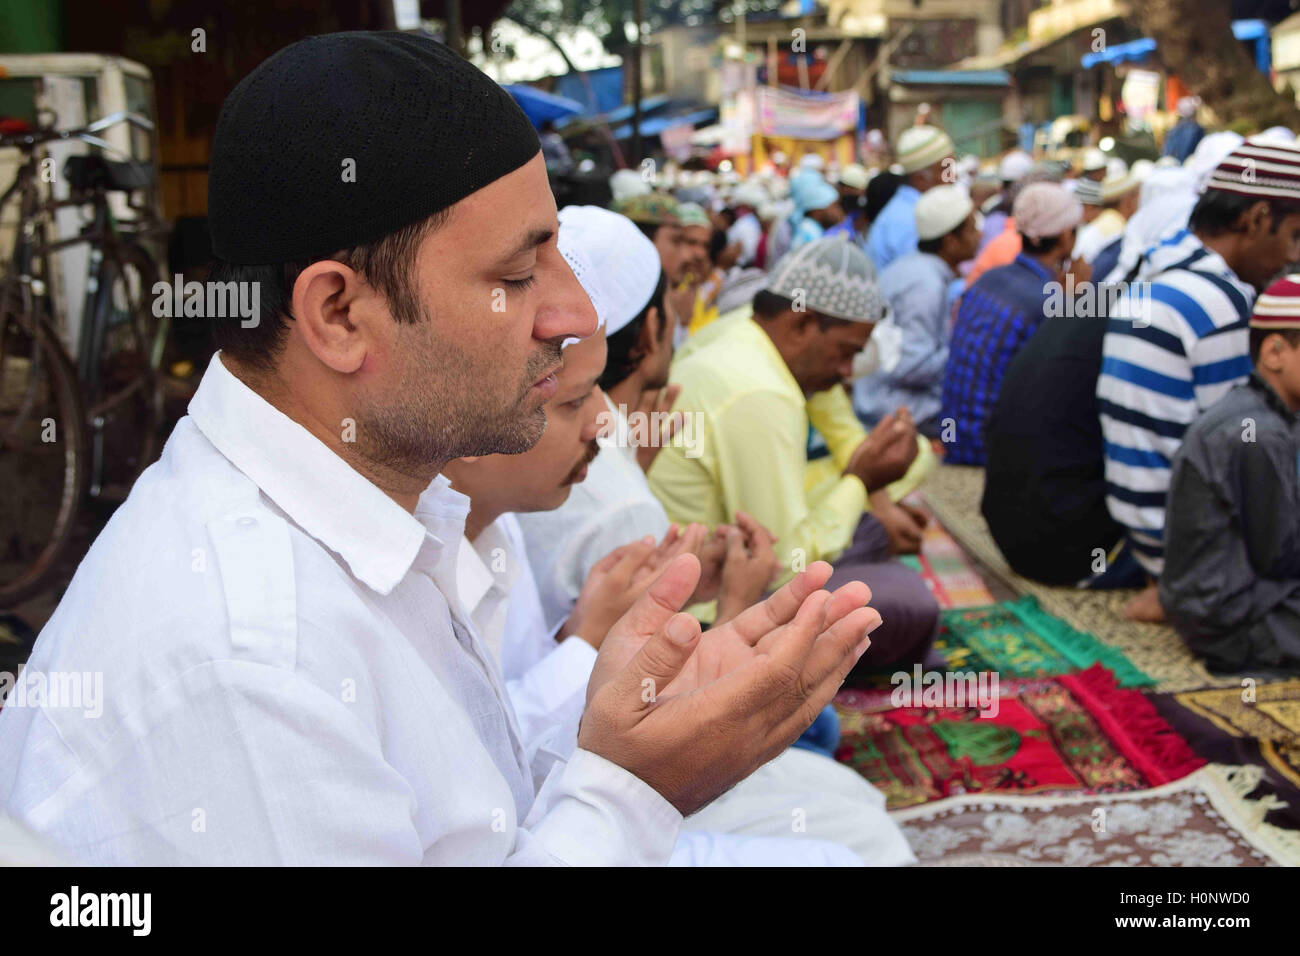 Muslime bieten Gebet, wie sie Eid al-Adha oder Opferfest, an der Bilal-Moschee in Mumbai, Indien feiern Stockfoto